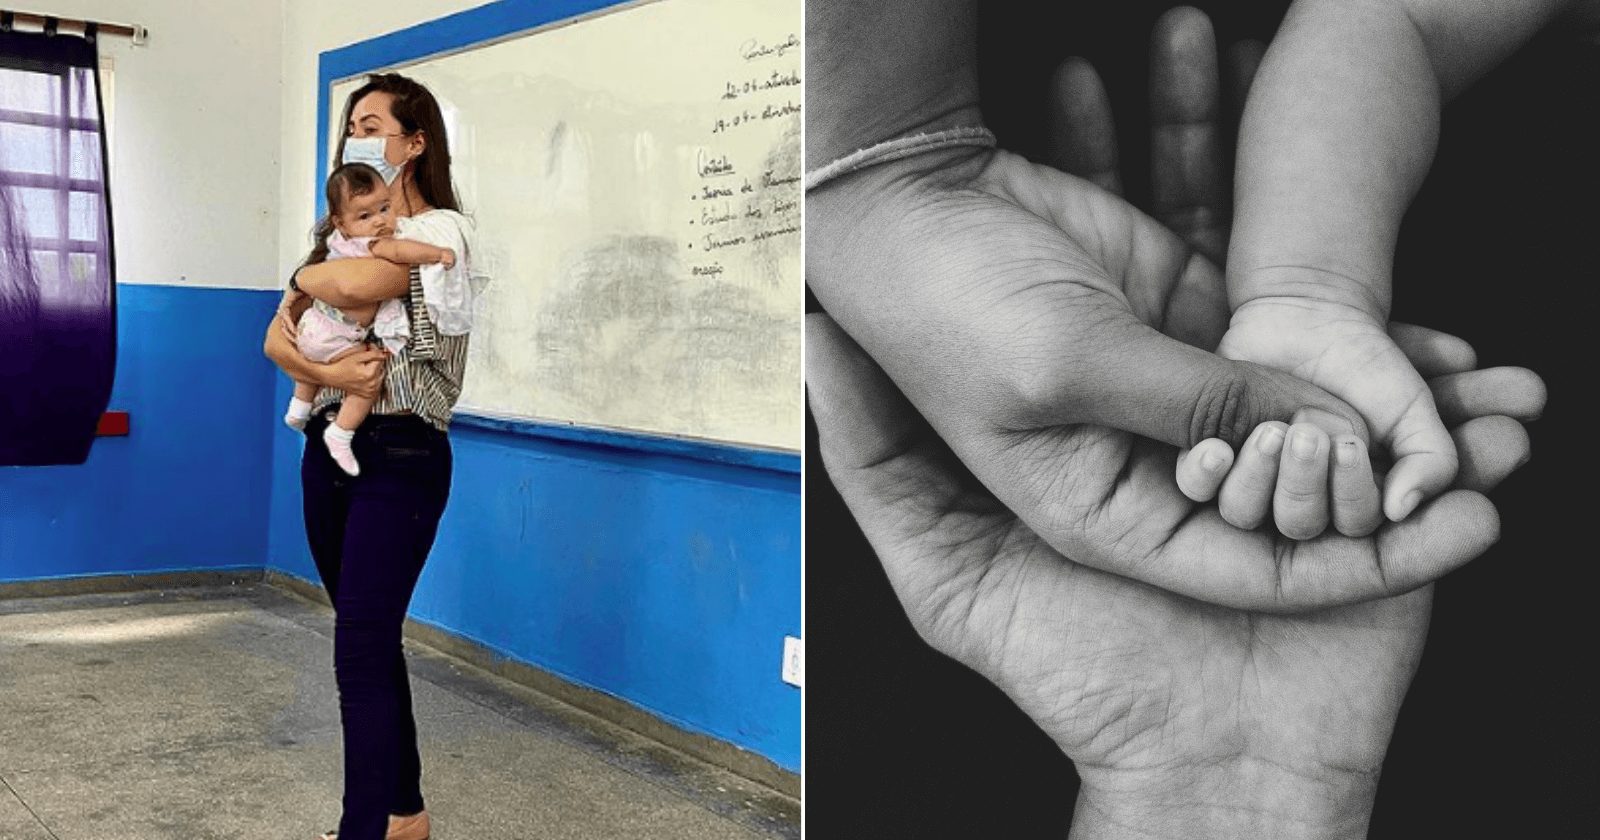 Foto de professora segurando bebê de aluna adolescente se torna viral